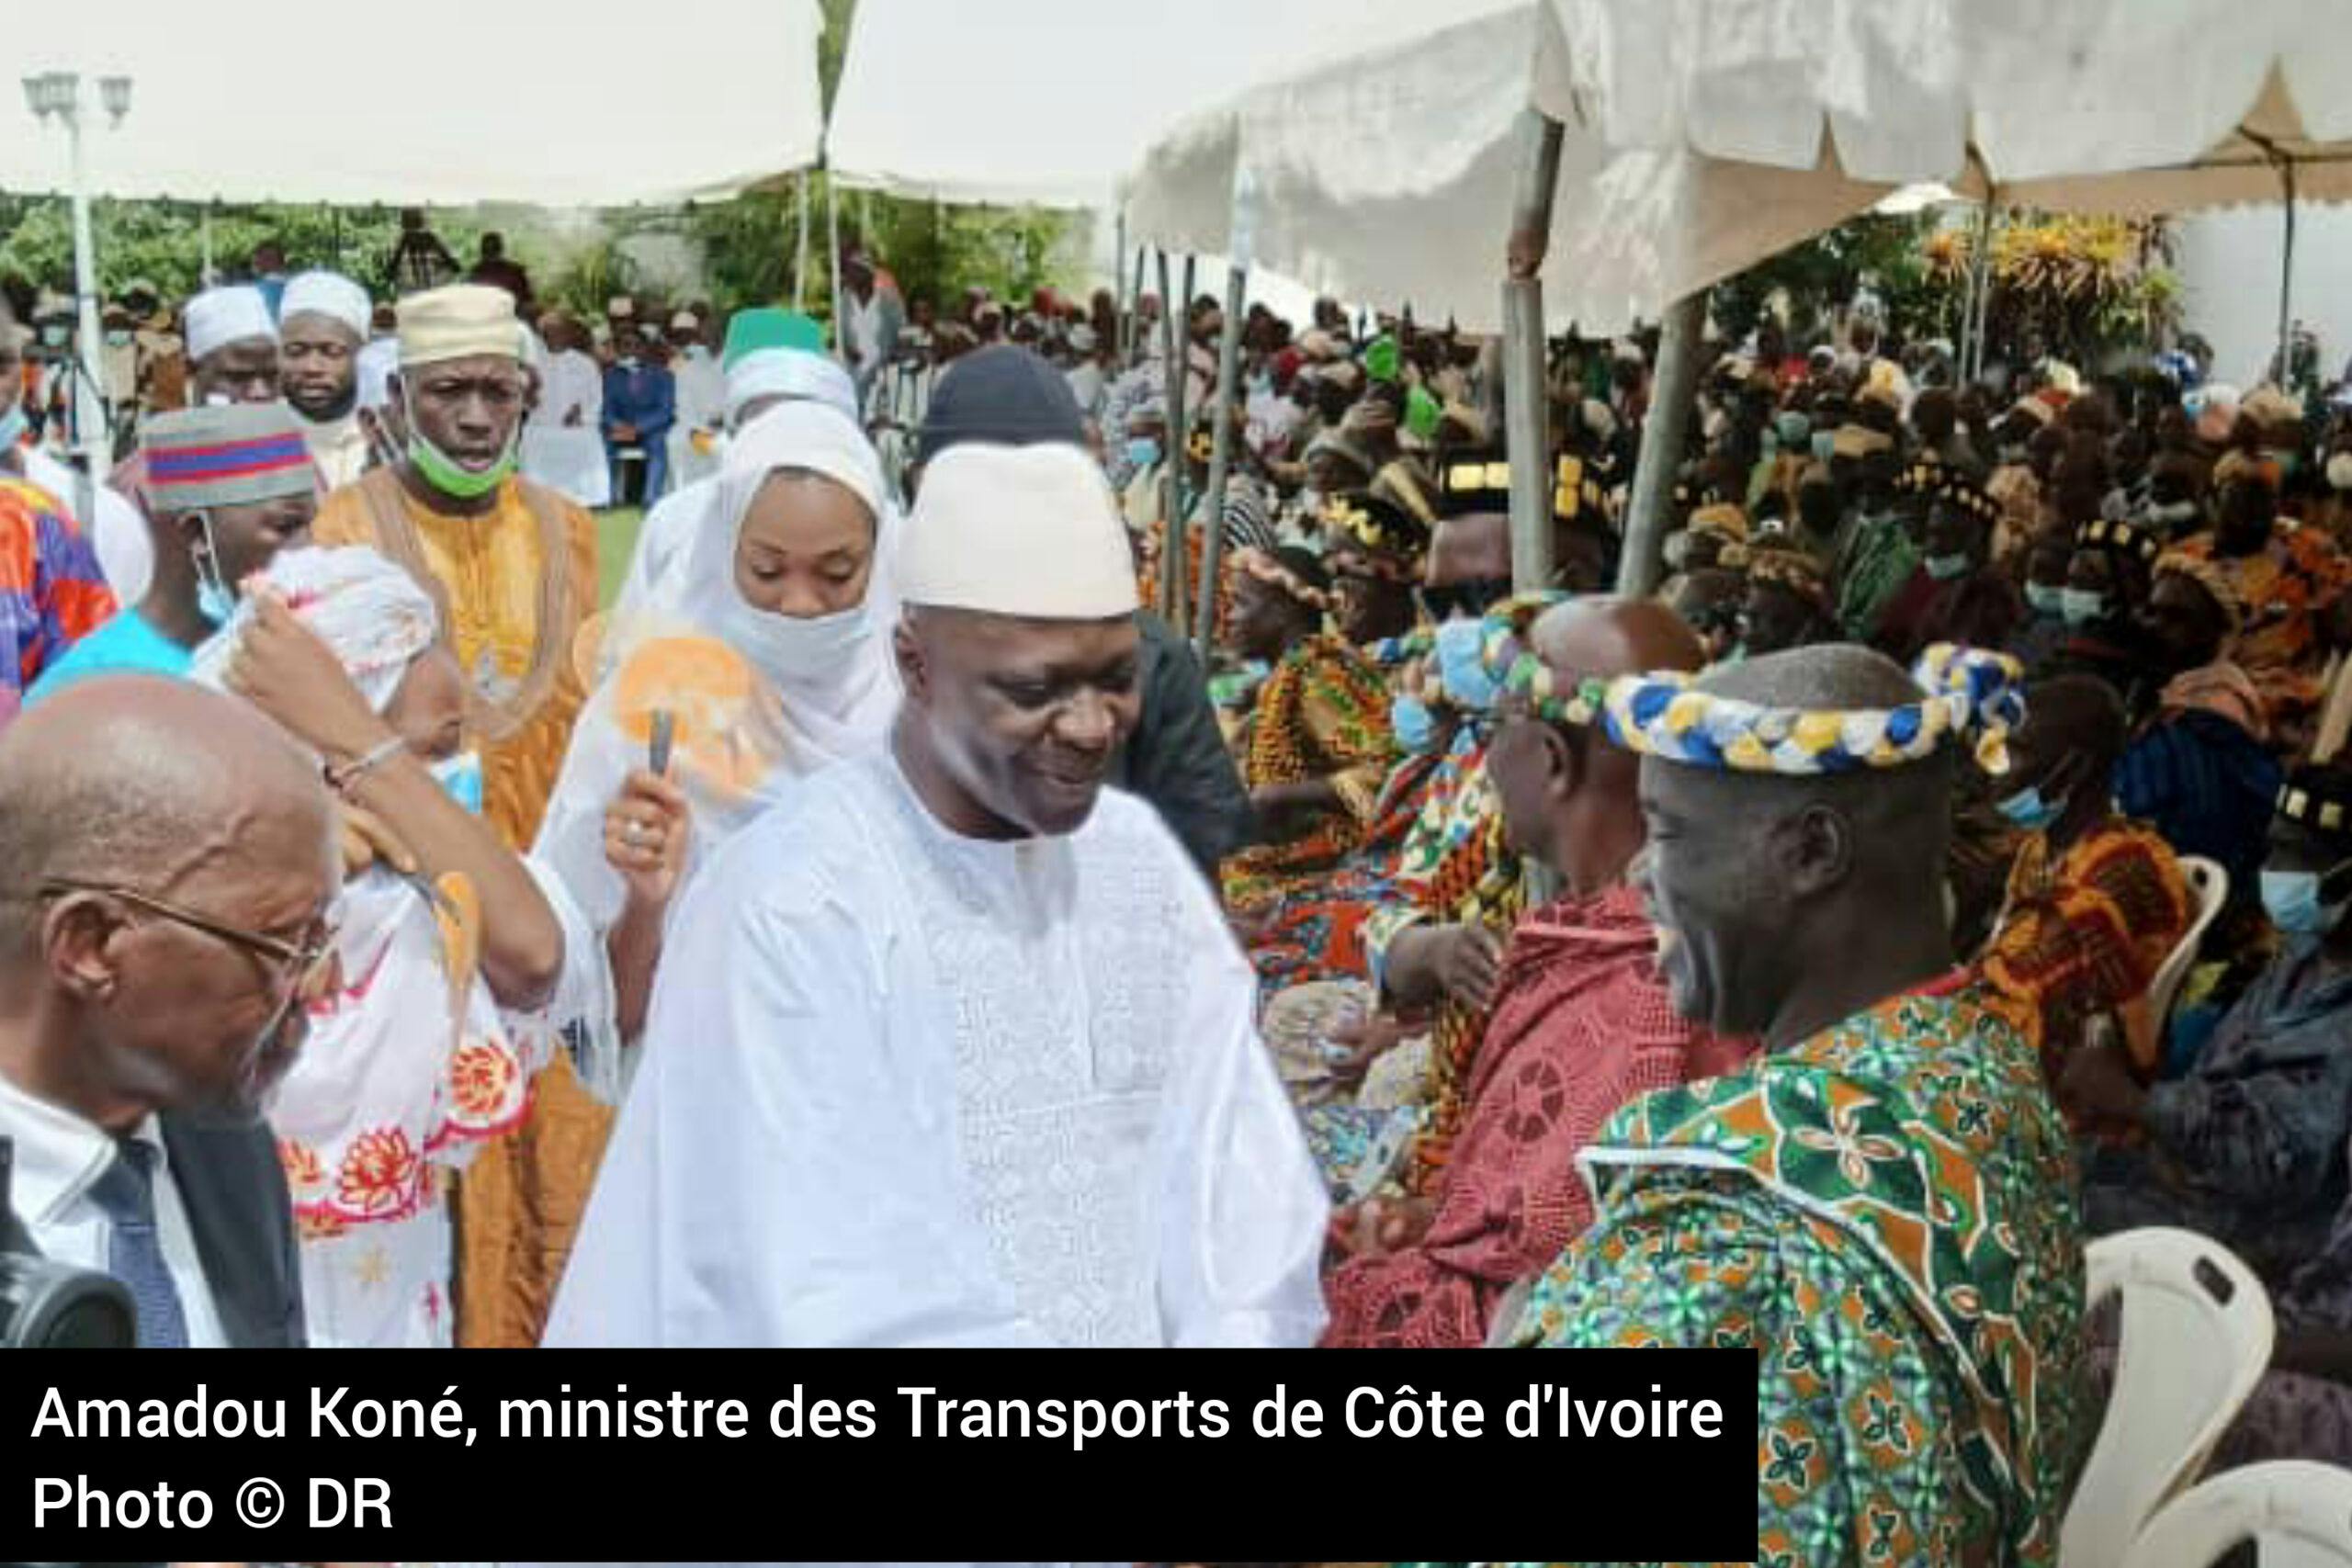 Côte d’Ivoire : Amadou Koné accueilli dans la liesse populaire à Bouaké, après sa reconduction au gouvernement Patrick Achi